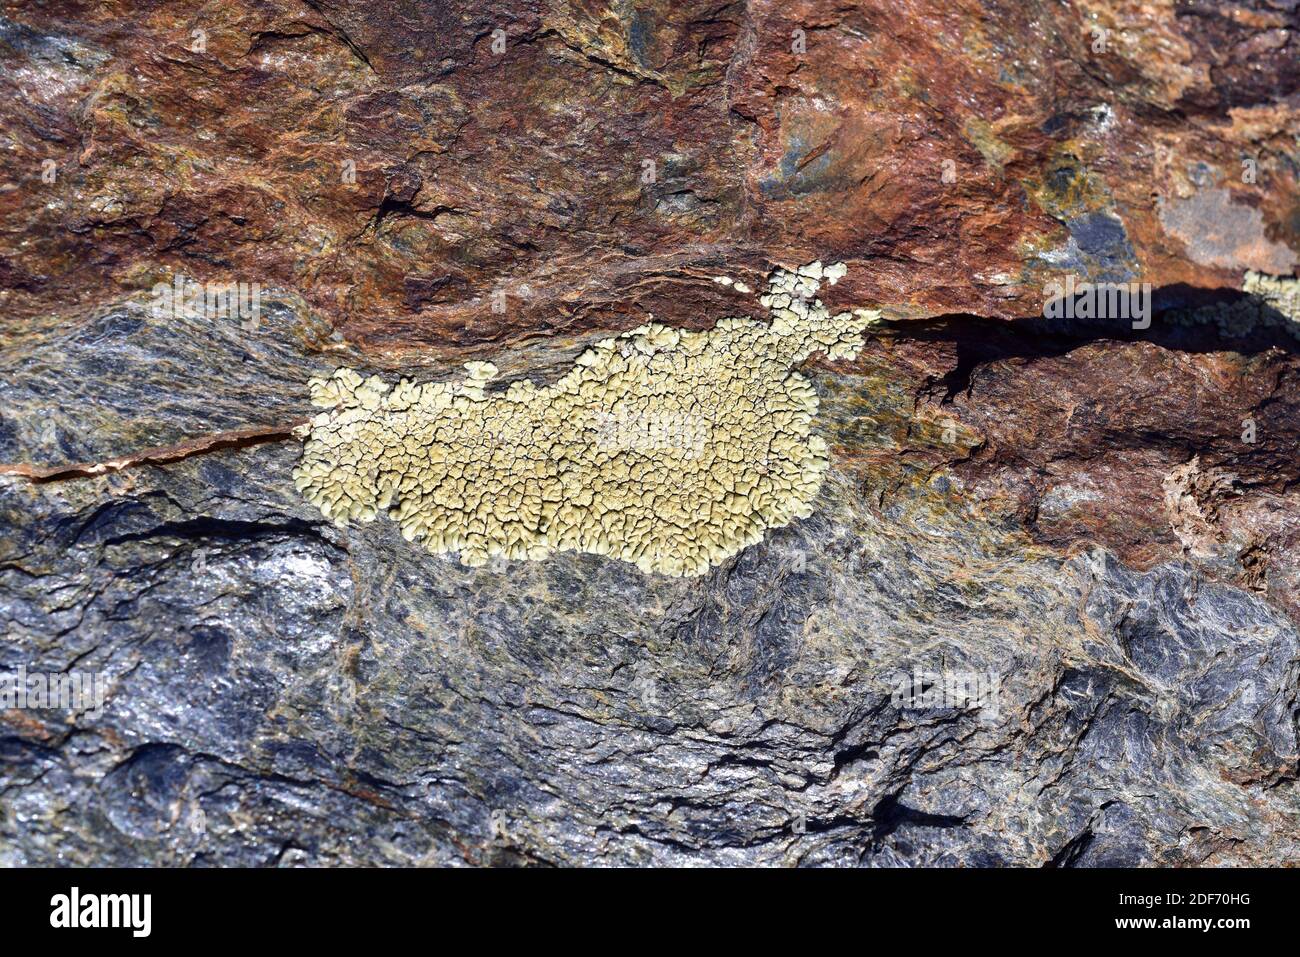 Goldpflasterflechte (Pleopsidium flavum oder Acarospora chlorophana) ist eine Krustenflechte, die auf kiesigen Felsen wächst. Dieses Foto wurde aufgenommen in Stockfoto